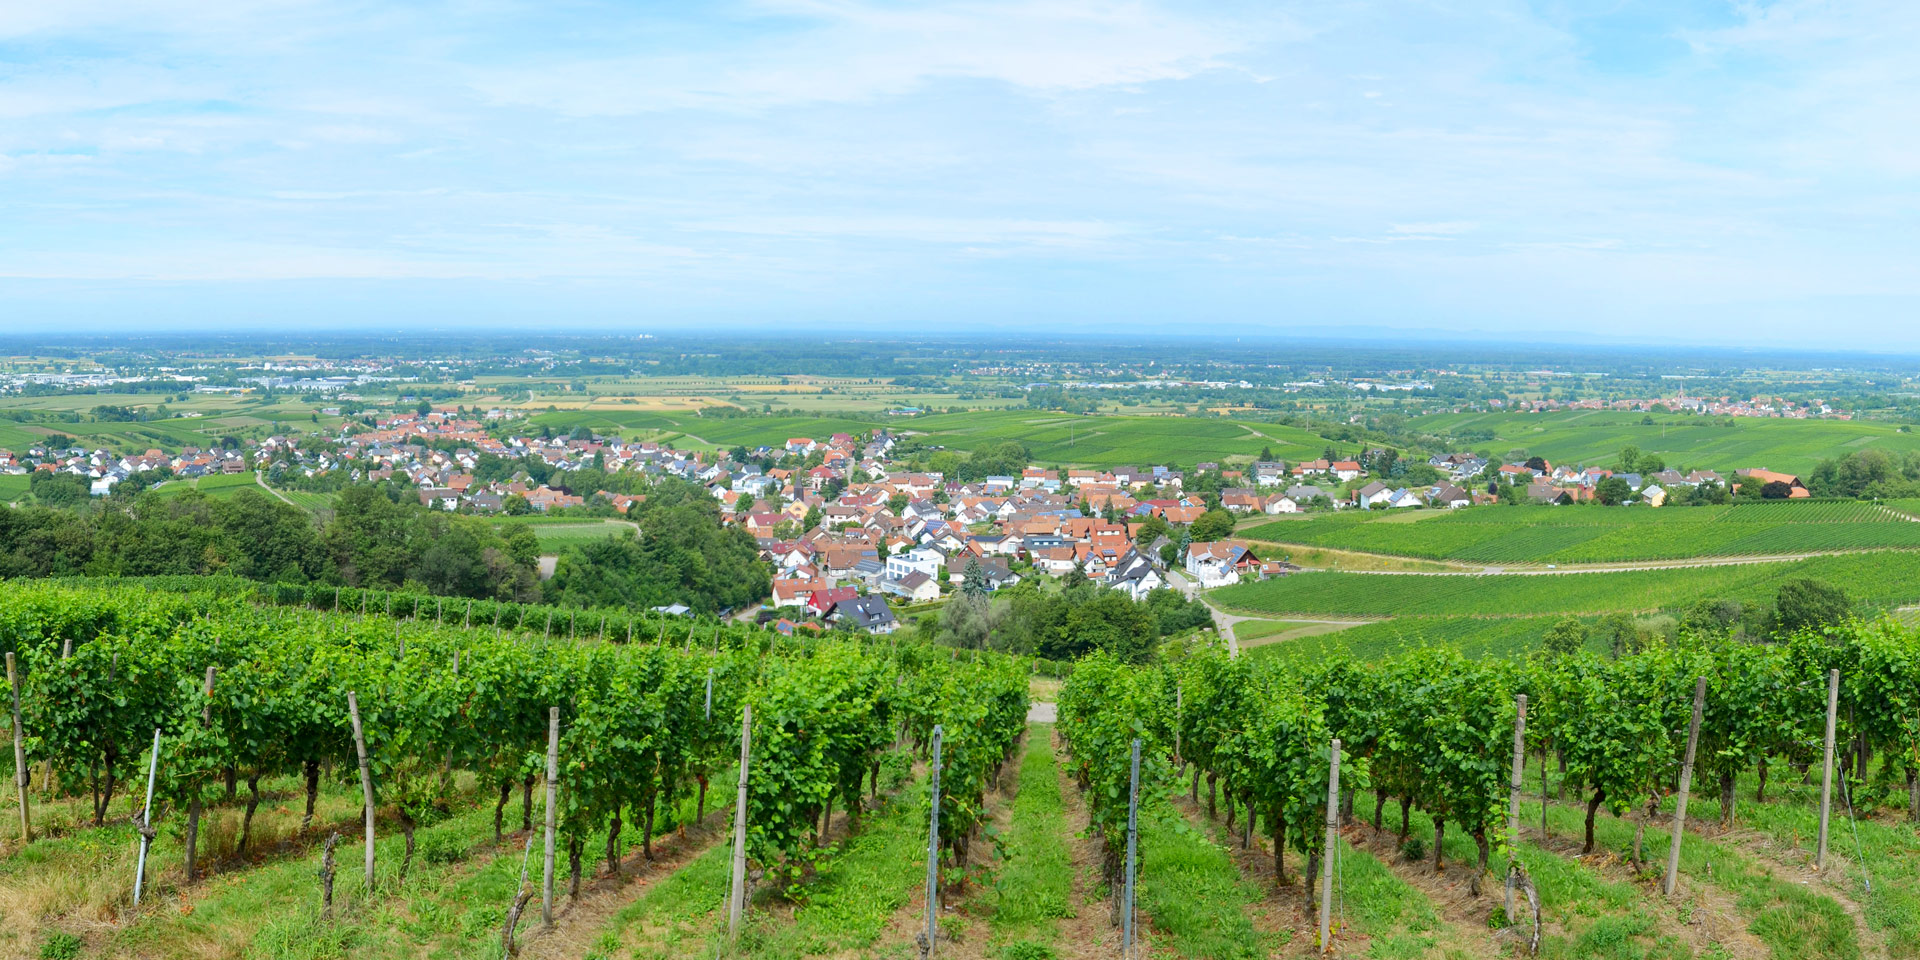 Zuid-Duitsland rond het Zwarte Woud, is een van de mooiste regio's van Duitsland.